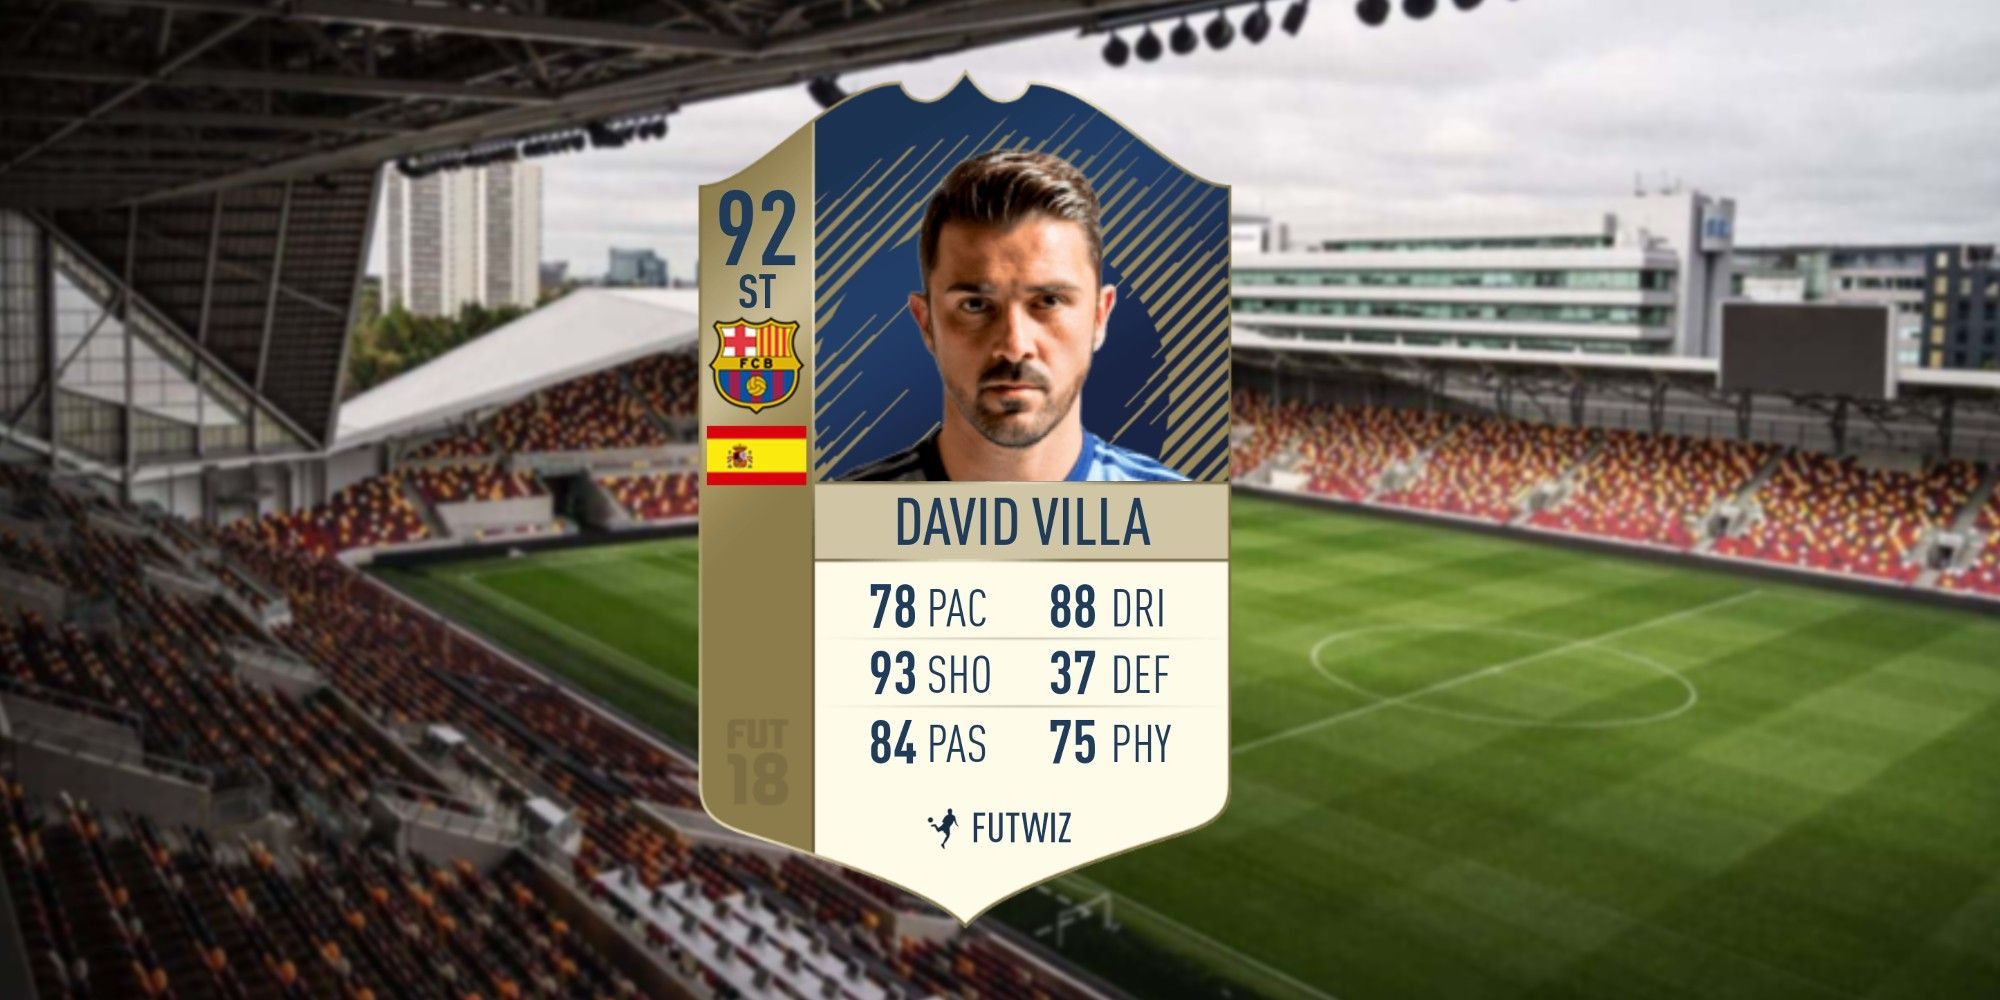 david-villa-fifa-card-8692130